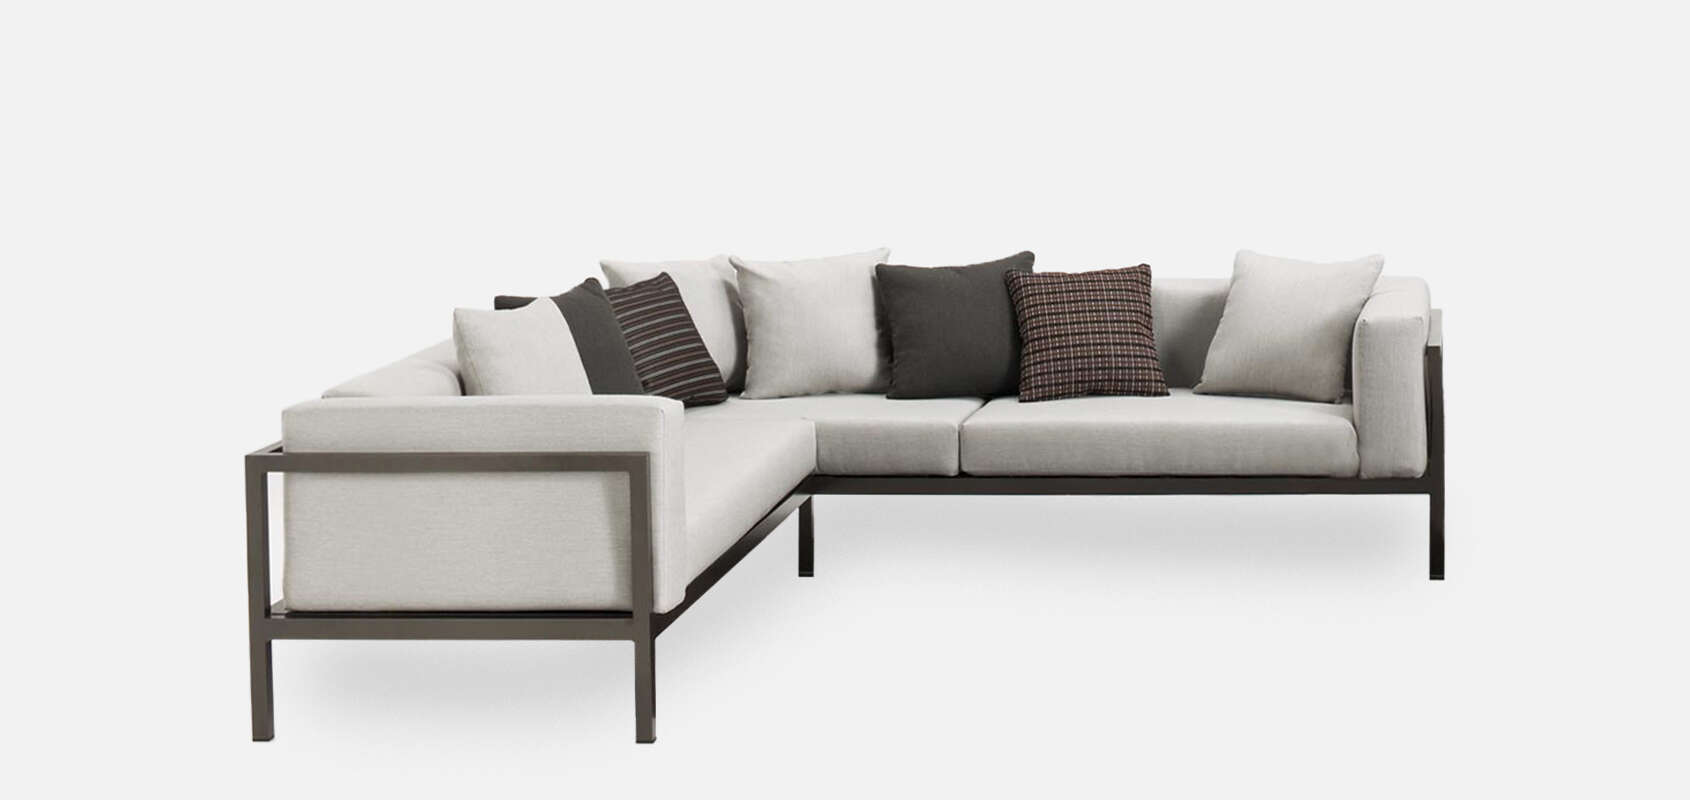 Landscape Modular Sofa